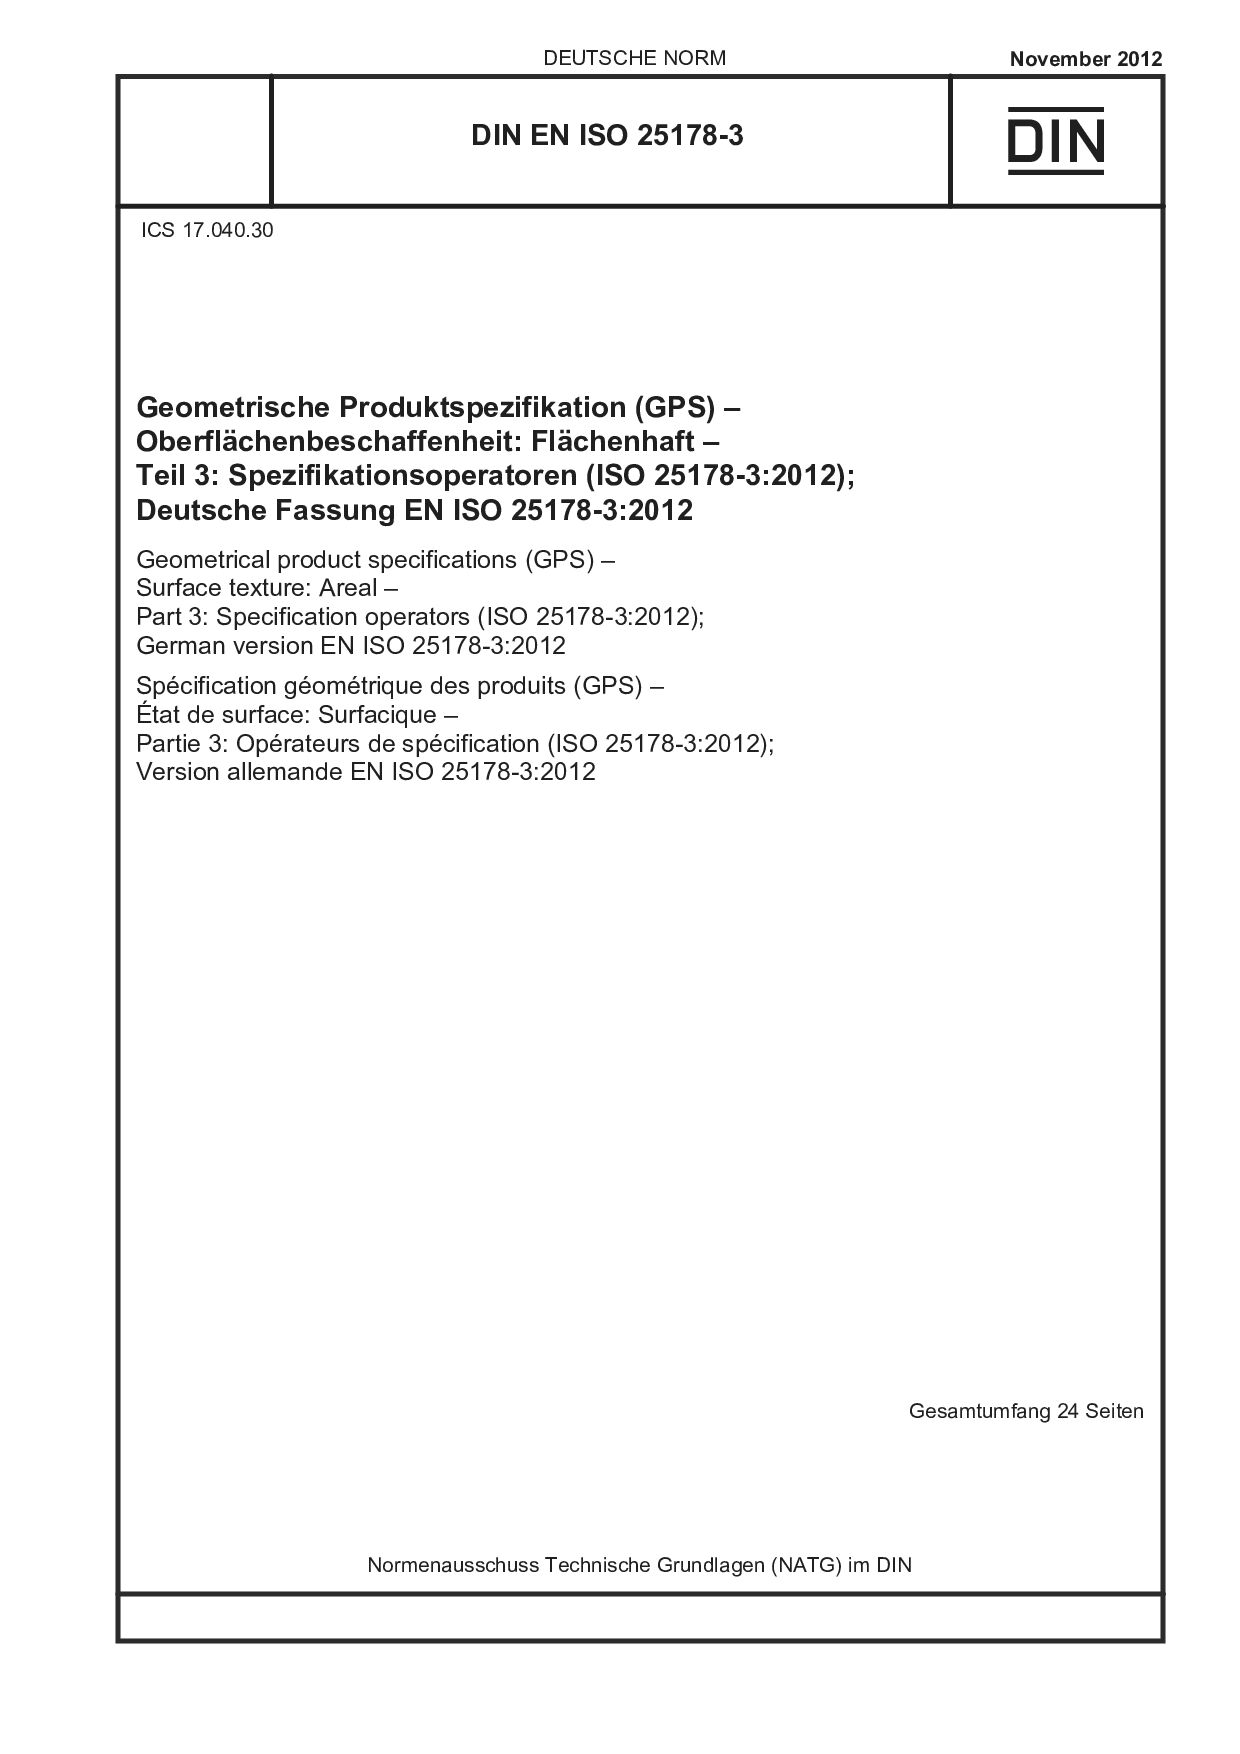 DIN EN ISO 25178-3:2012封面图